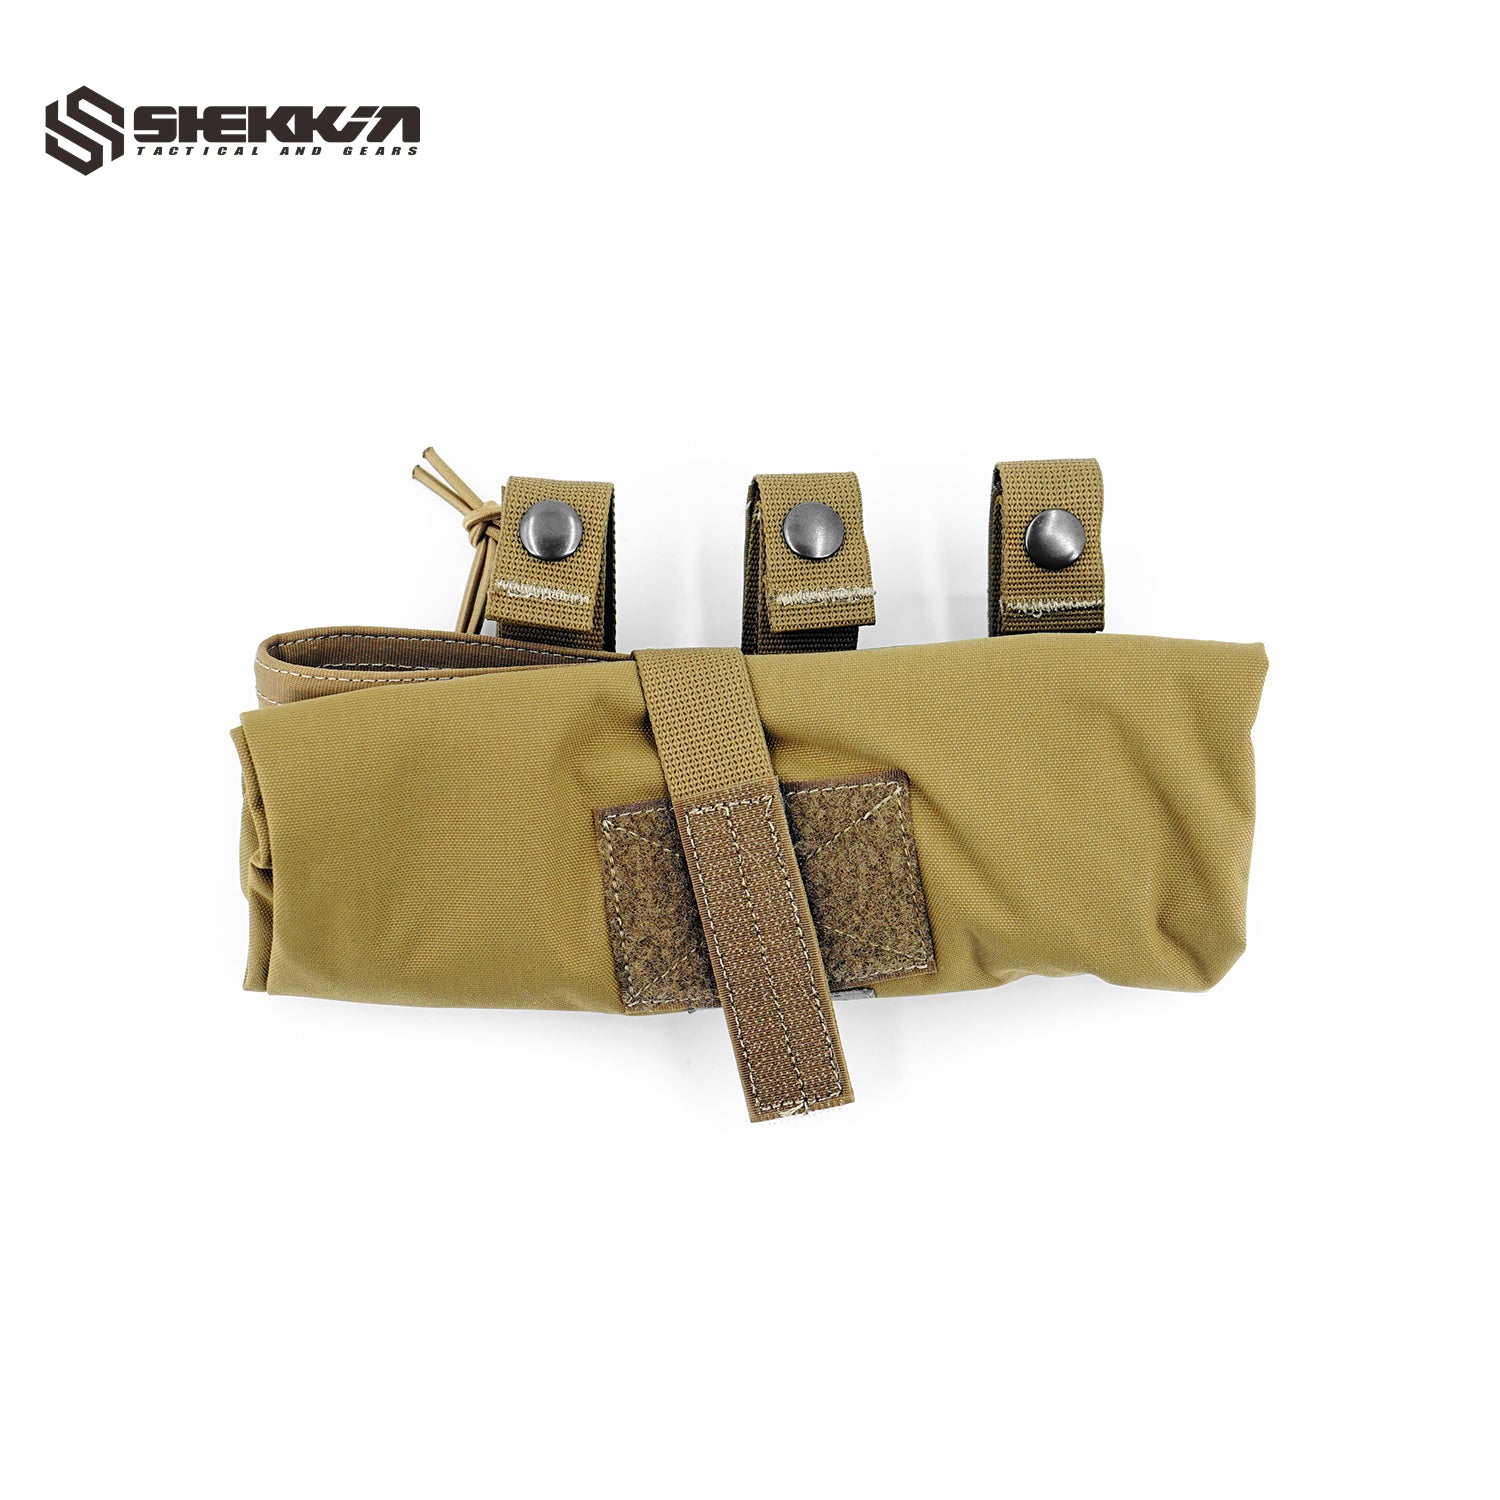 CSM style Roll Up Dump Bag Pouch - Shekkin Gears